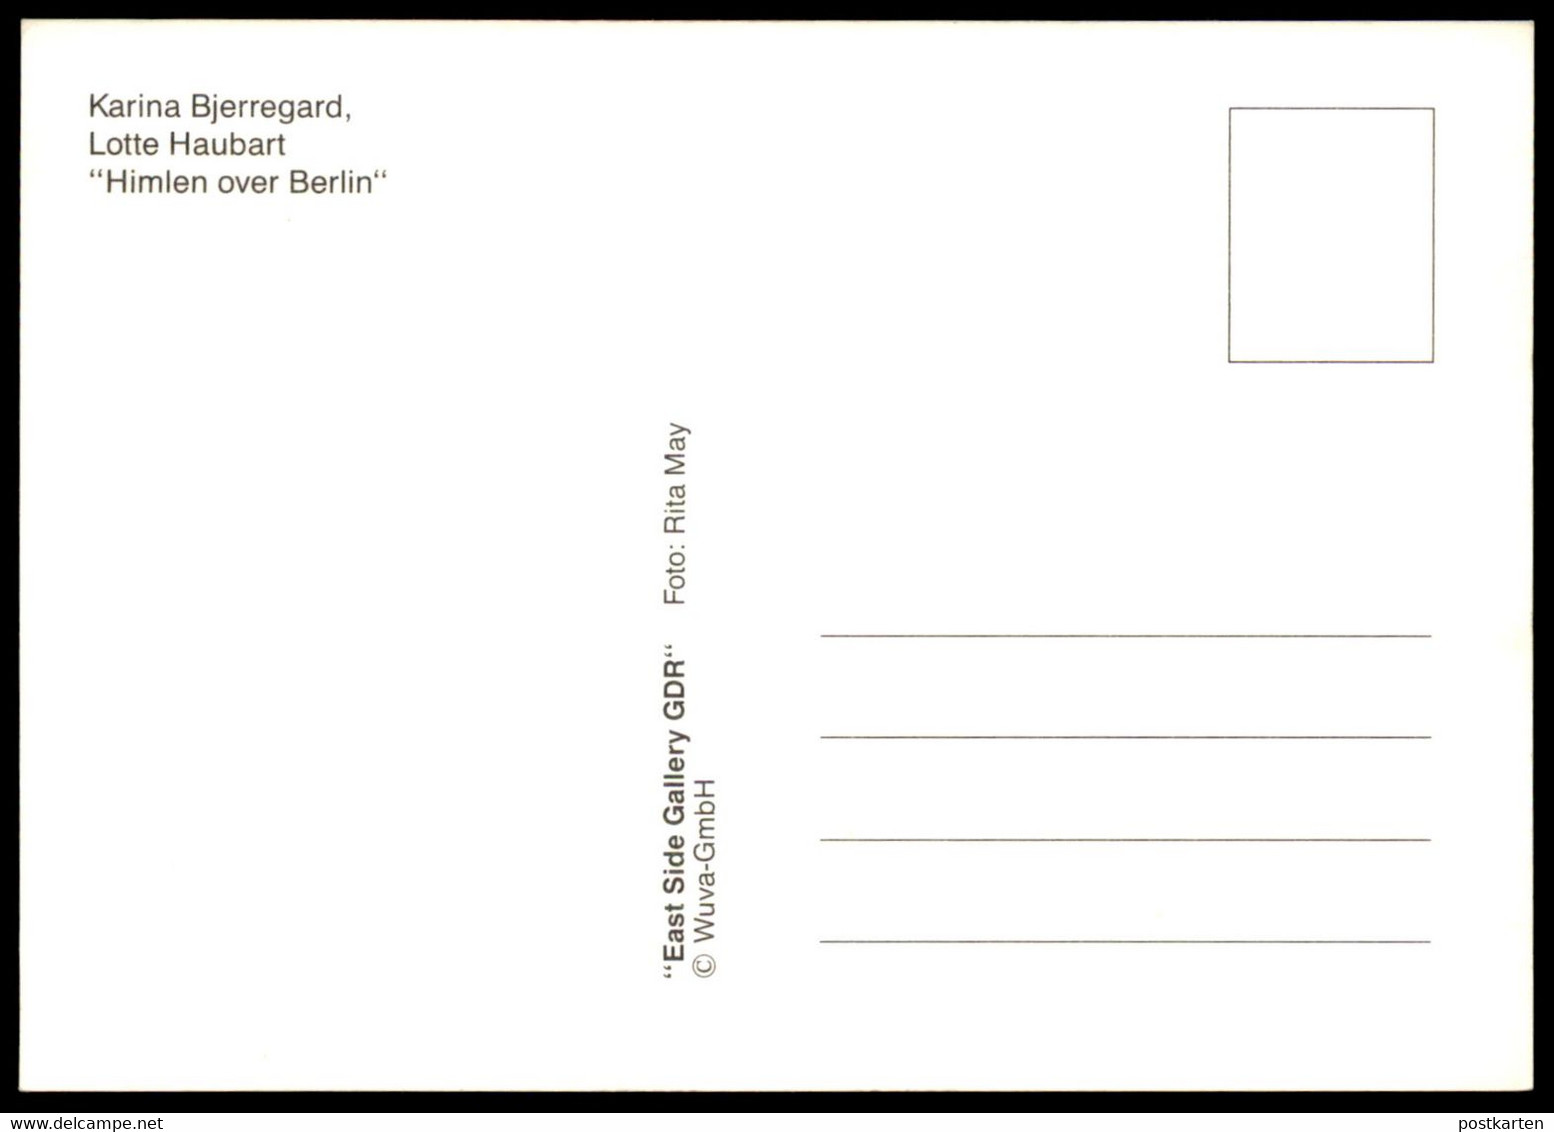 ÄLTERE POSTKARTE BERLINER MAUER KARINA BJERREGARD LOTTE HAUBART HIMLEN OVER BERLIN THE WALL MUR BRANDENBURGER TOR - Muro De Berlin